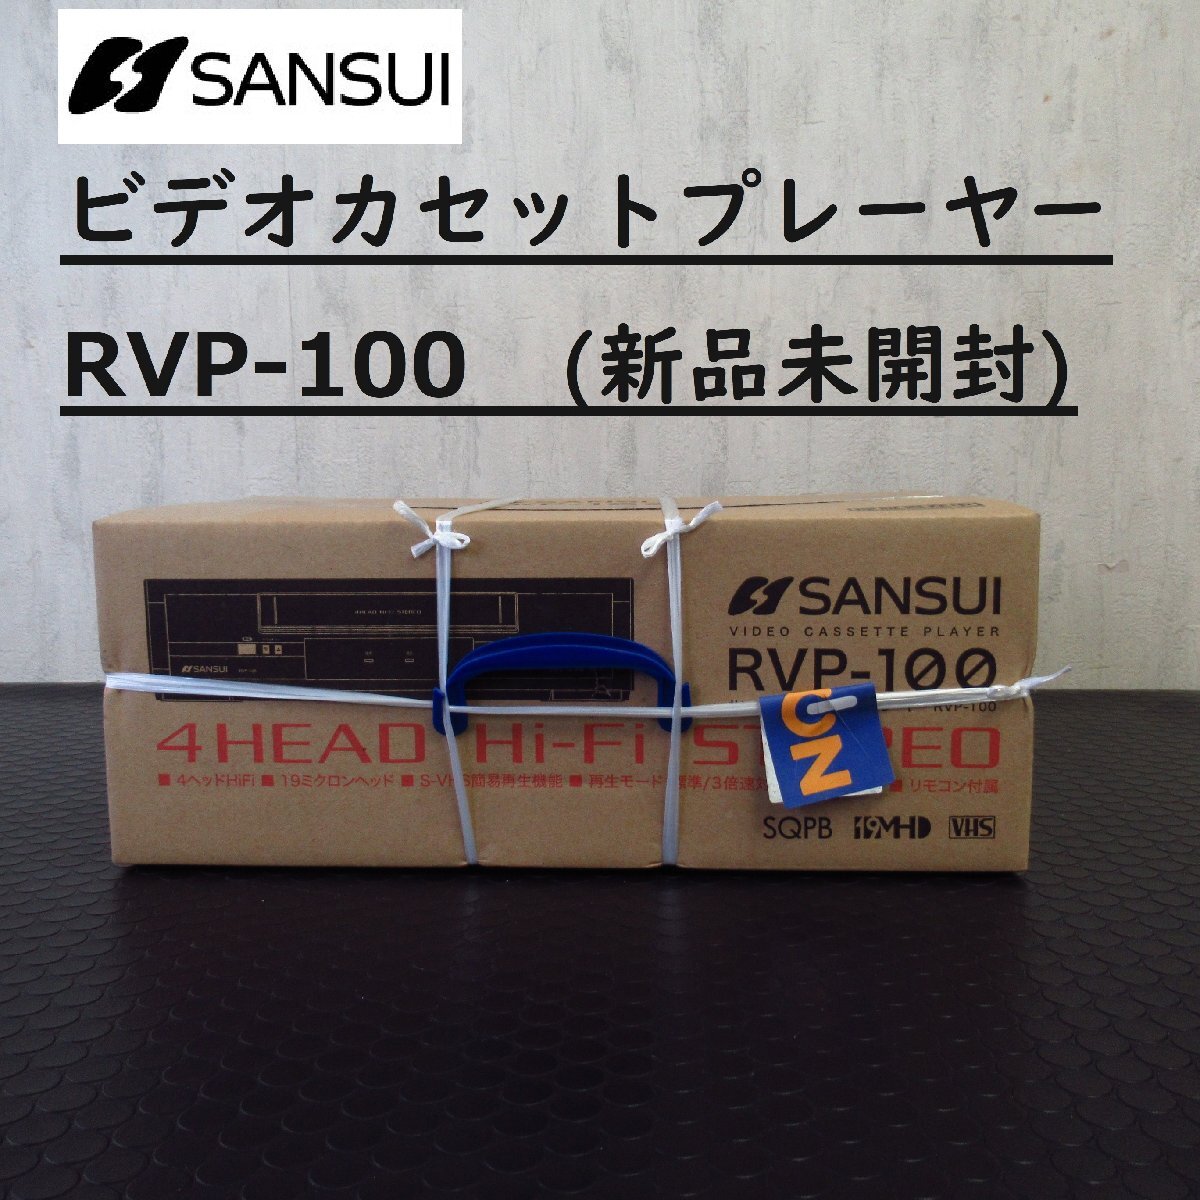 SANSUI RVP-100 видео кассетная магнитола #4 head HiFi #S-VHS простой функция воспроизведения # с дистанционным пультом .[ новый товар / нераспечатанный товар ]